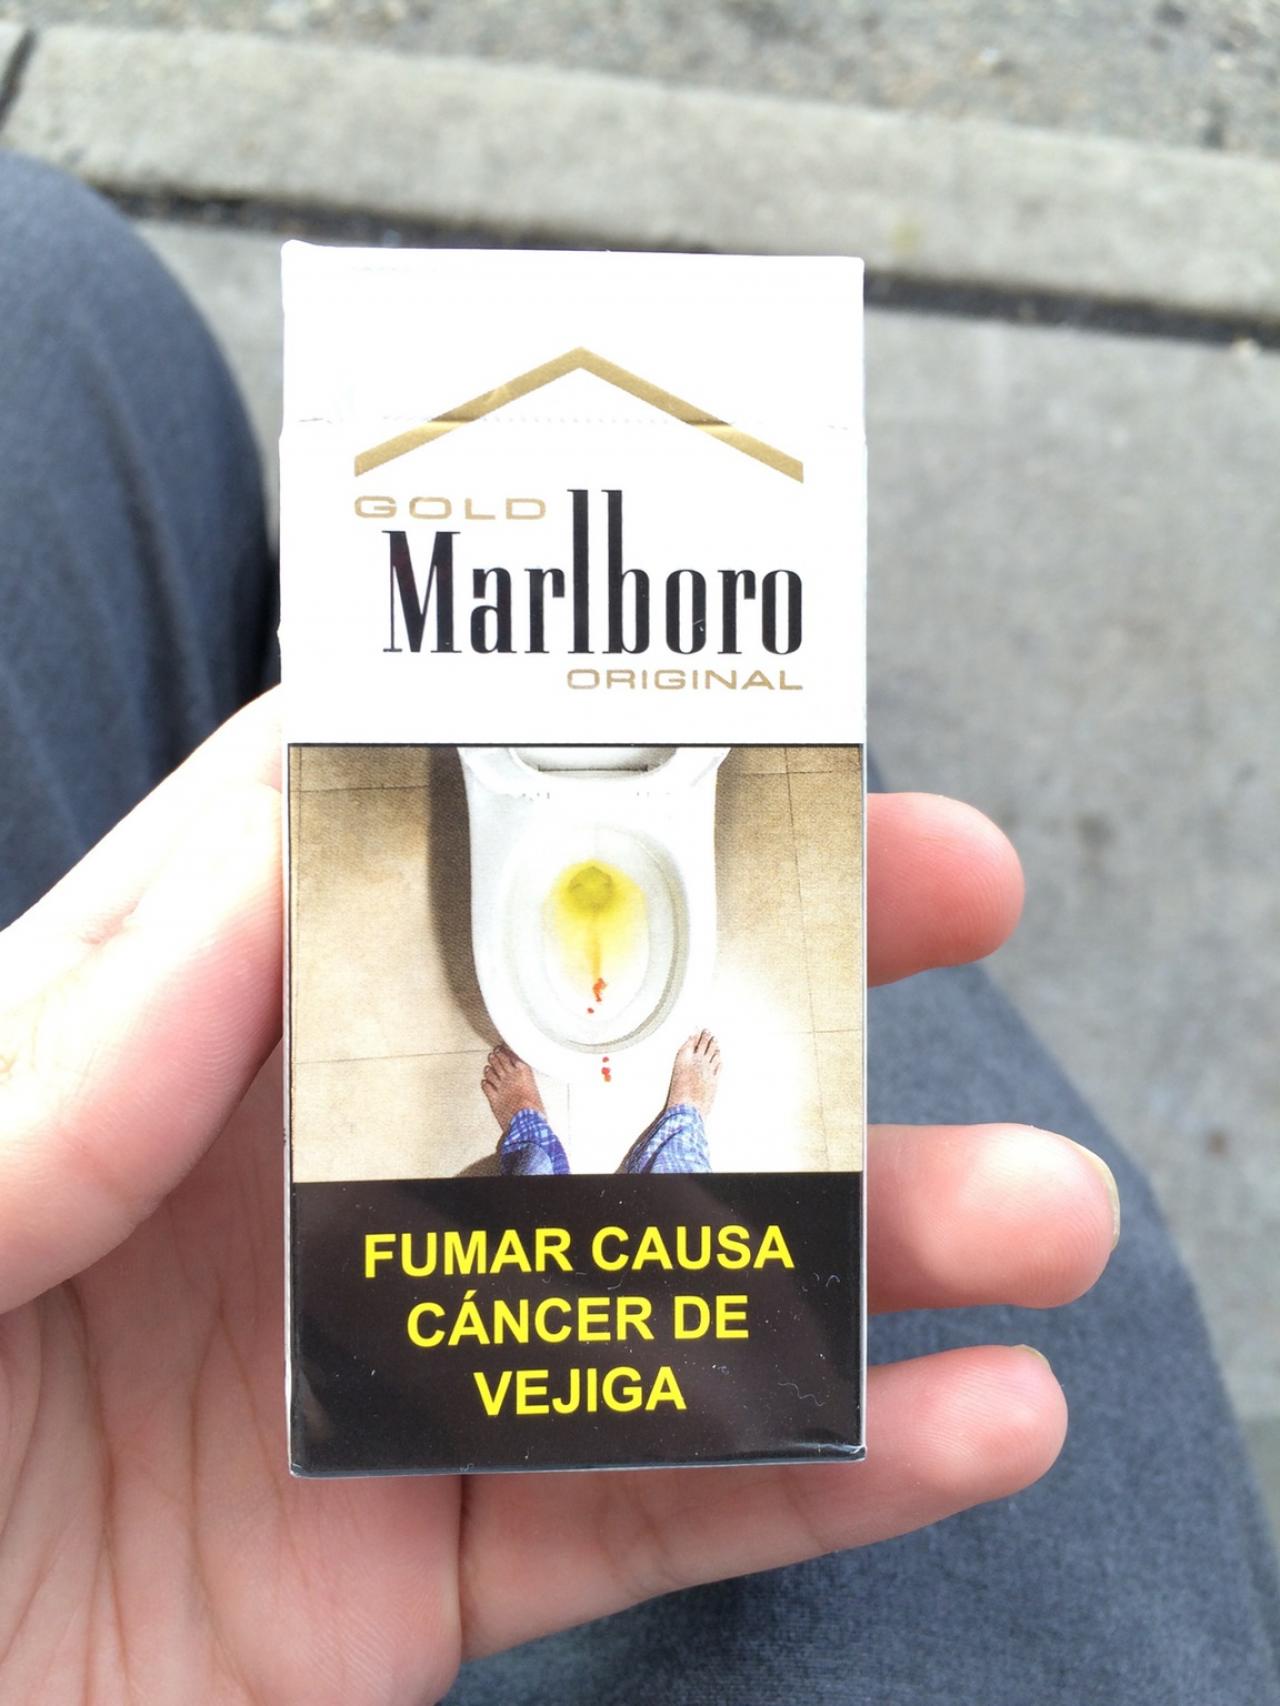 Как в Эквадоре происходит борьба с курением